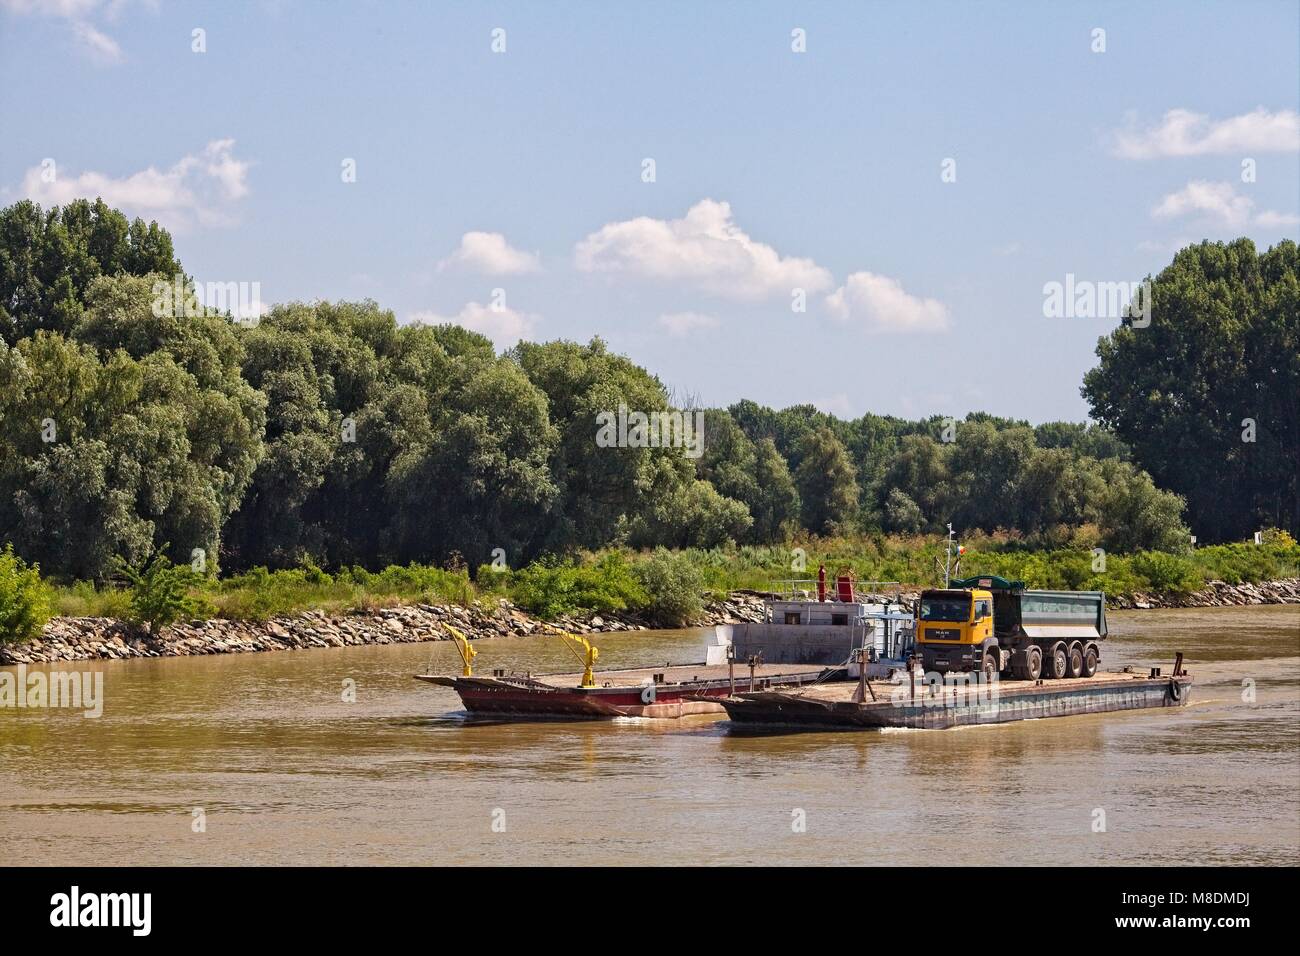 Mover un camión volquete en una barcaza aguas abajo de Tulcea, en el delta del río Danubio Foto de stock